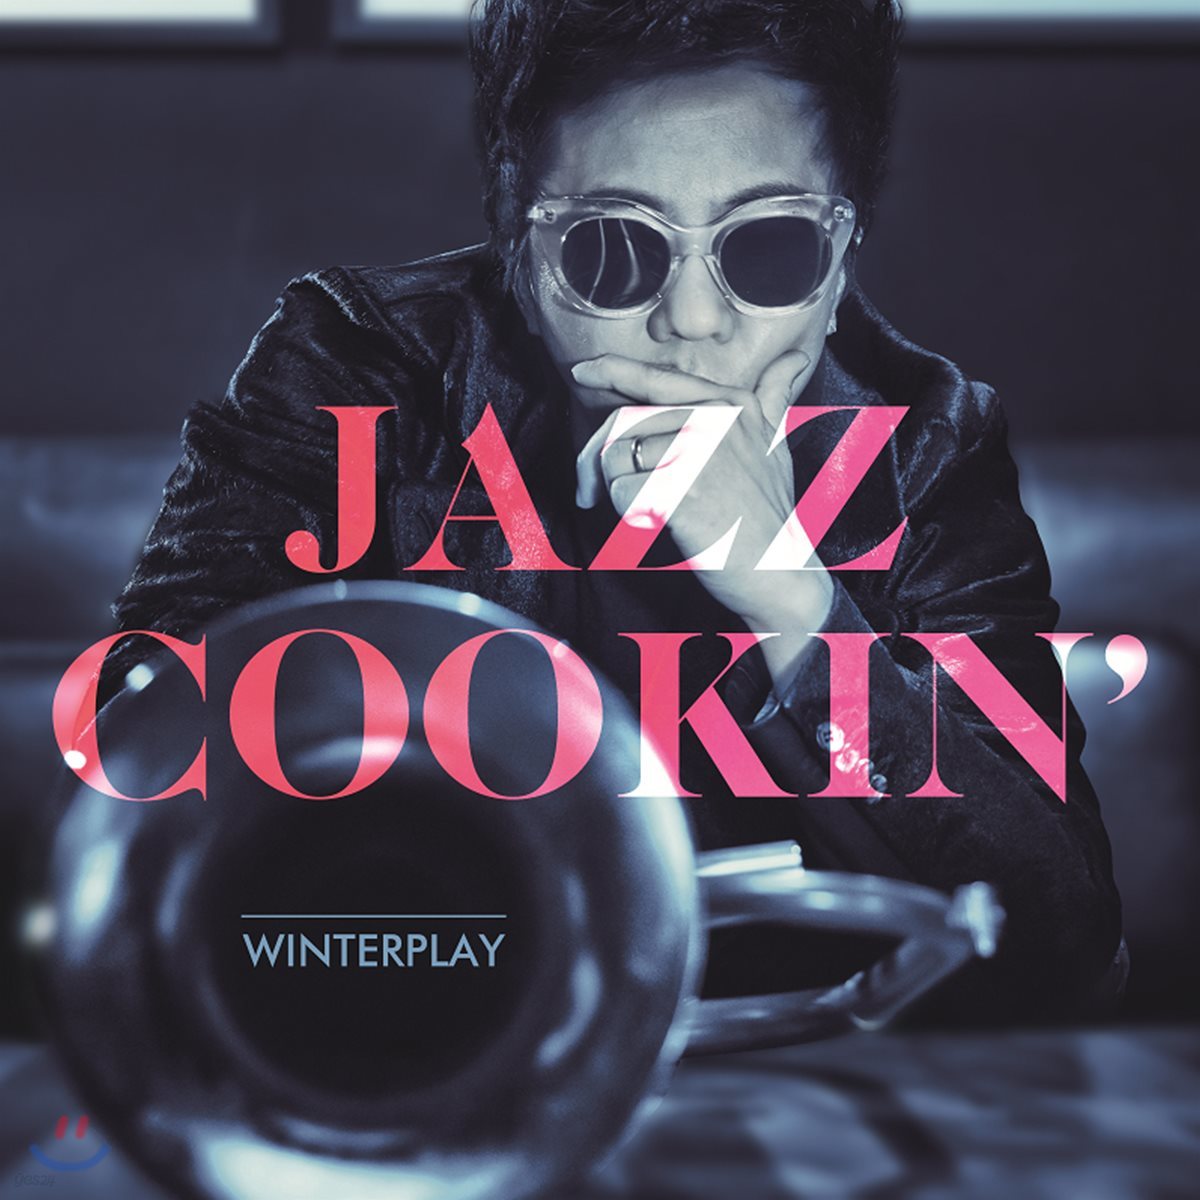 윈터플레이(Winterplay) - Jazz Cookin’ 